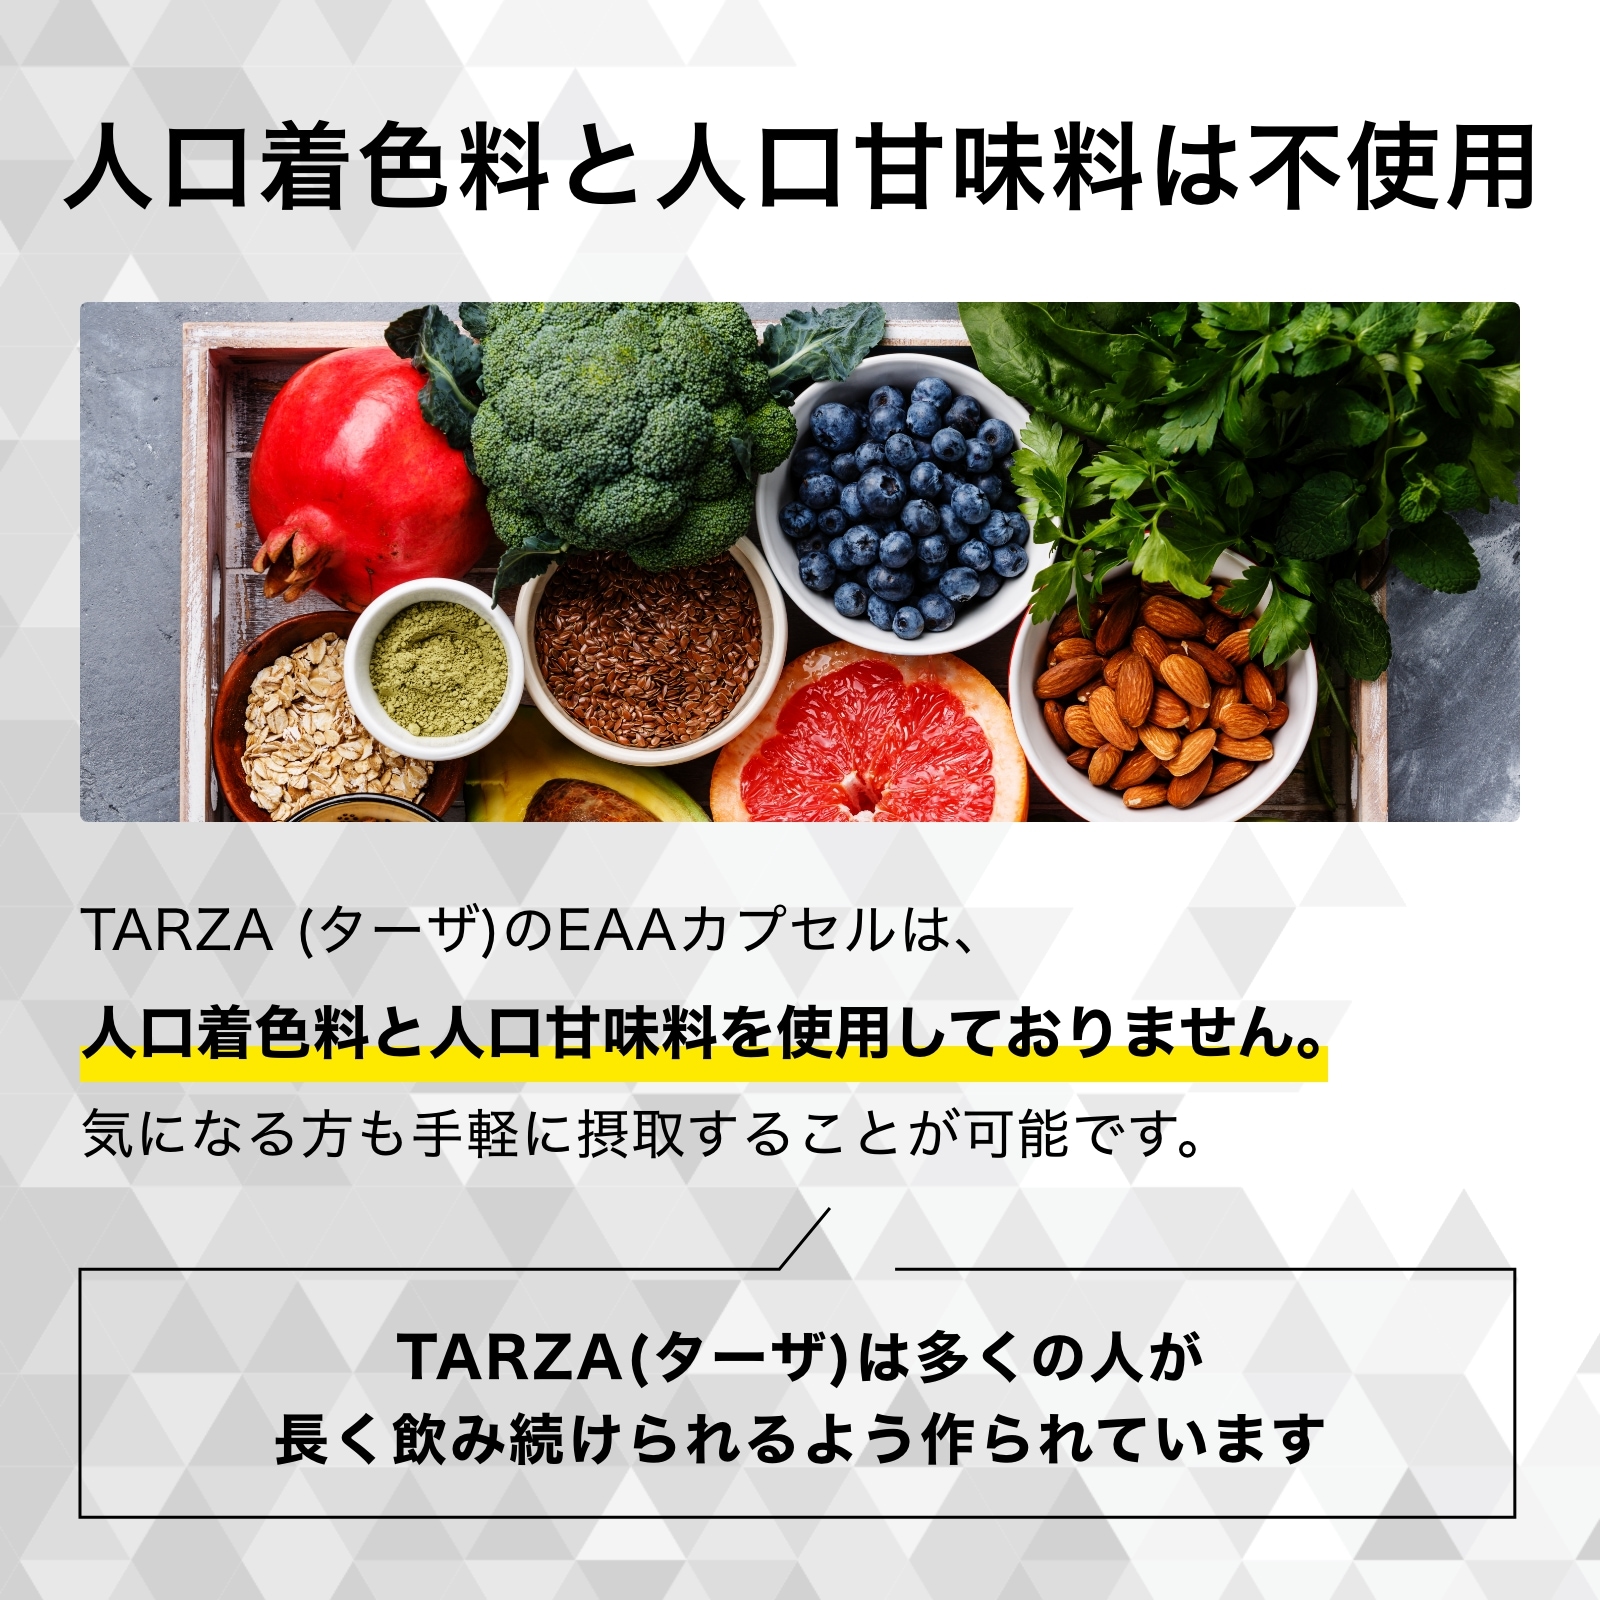 tarzaeaaカプセル着色料と甘味料は不使用